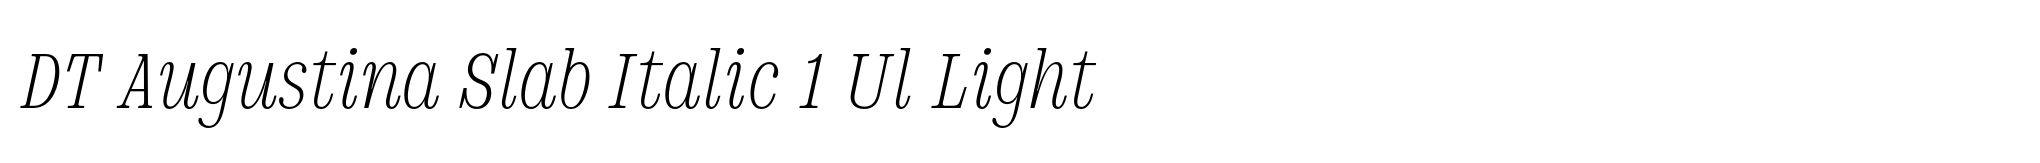 DT Augustina Slab Italic 1 Ul Light image